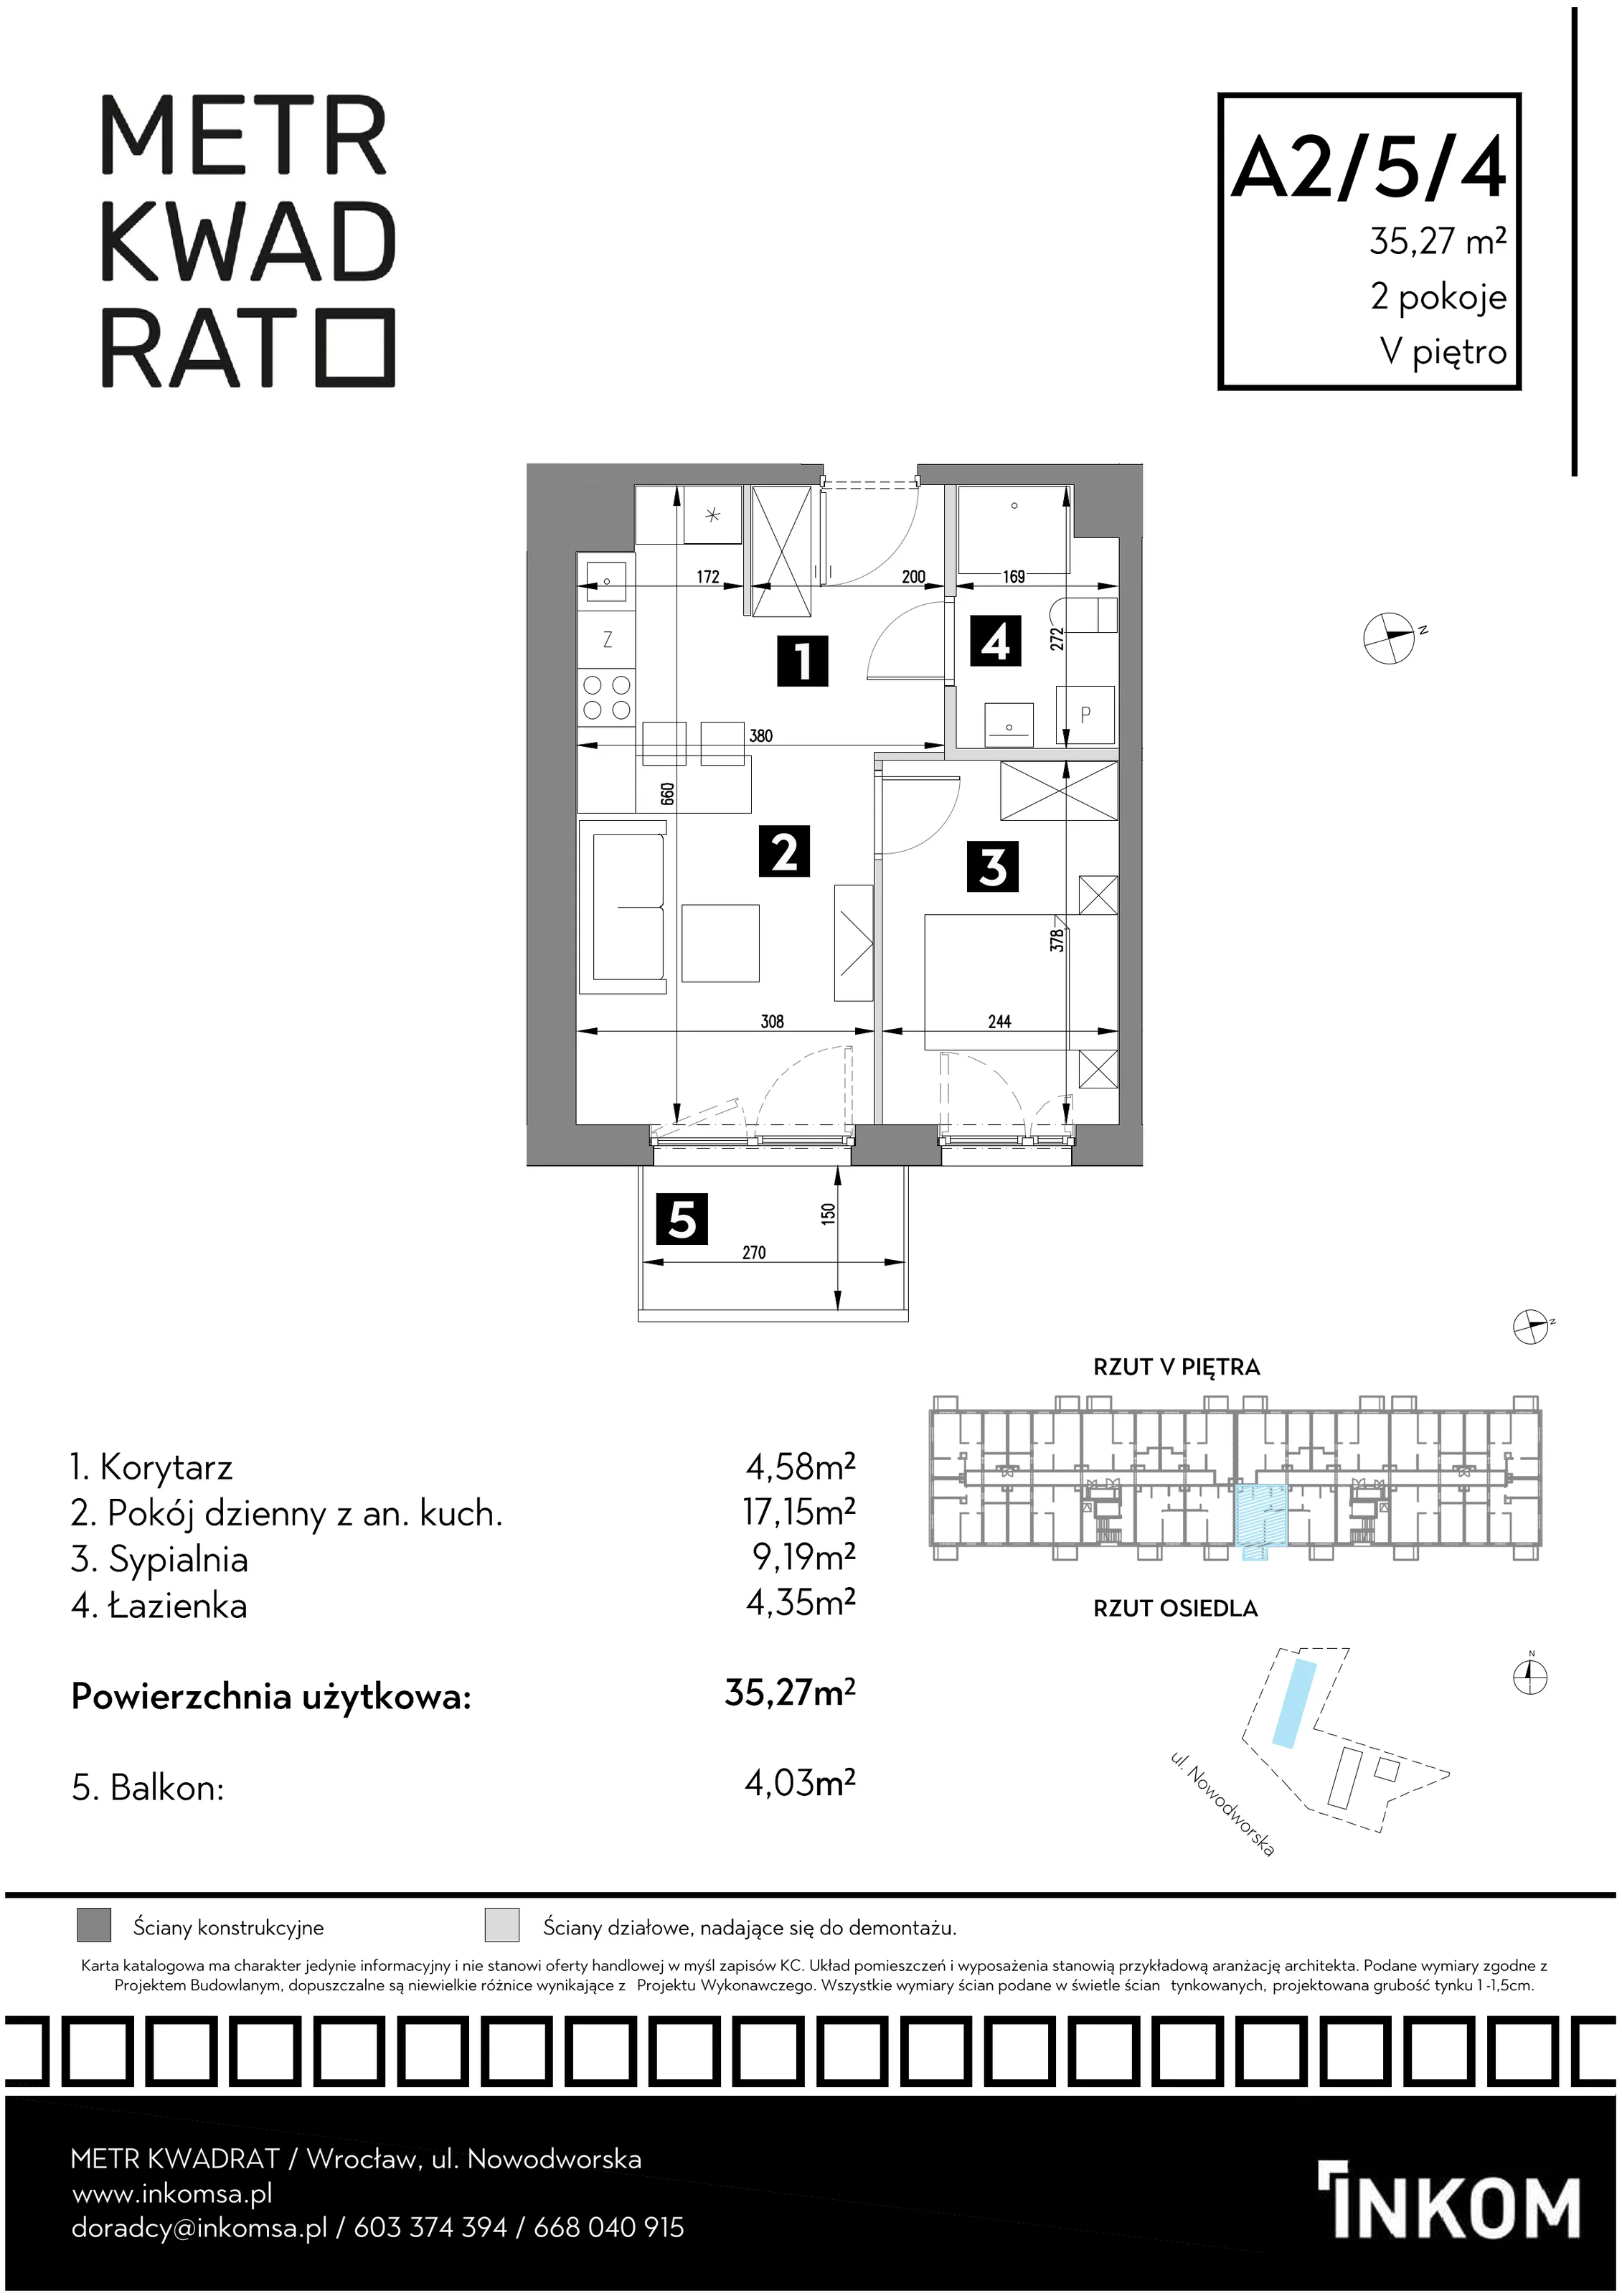 Mieszkanie 35,27 m², piętro 5, oferta nr A2/5/4, Metr Kwadrat, Wrocław, Nowy Dwór, ul. Nowodworska 17B